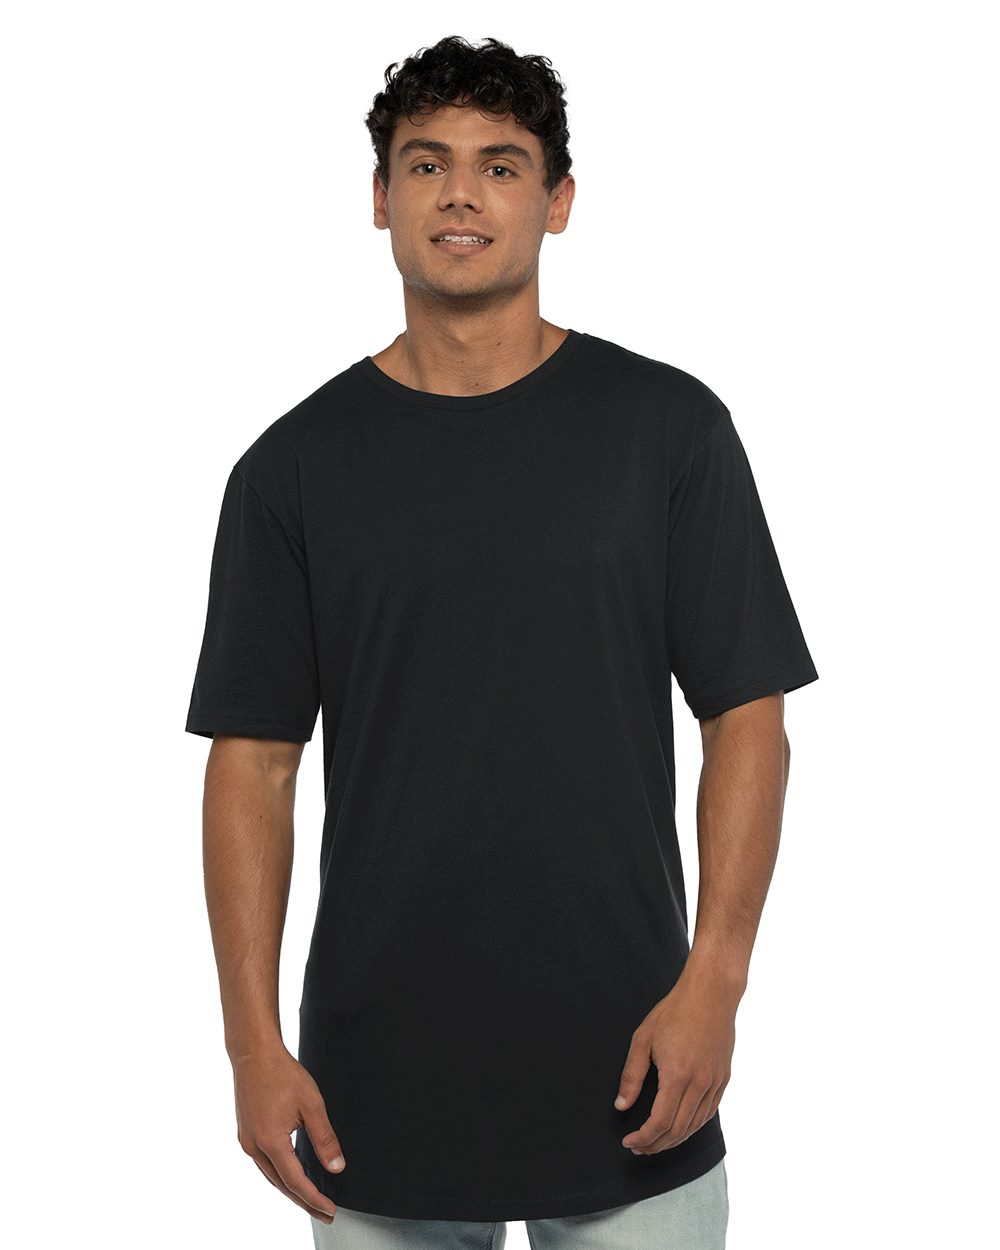 Next Level 3600 Unisex Cotton T Shirt